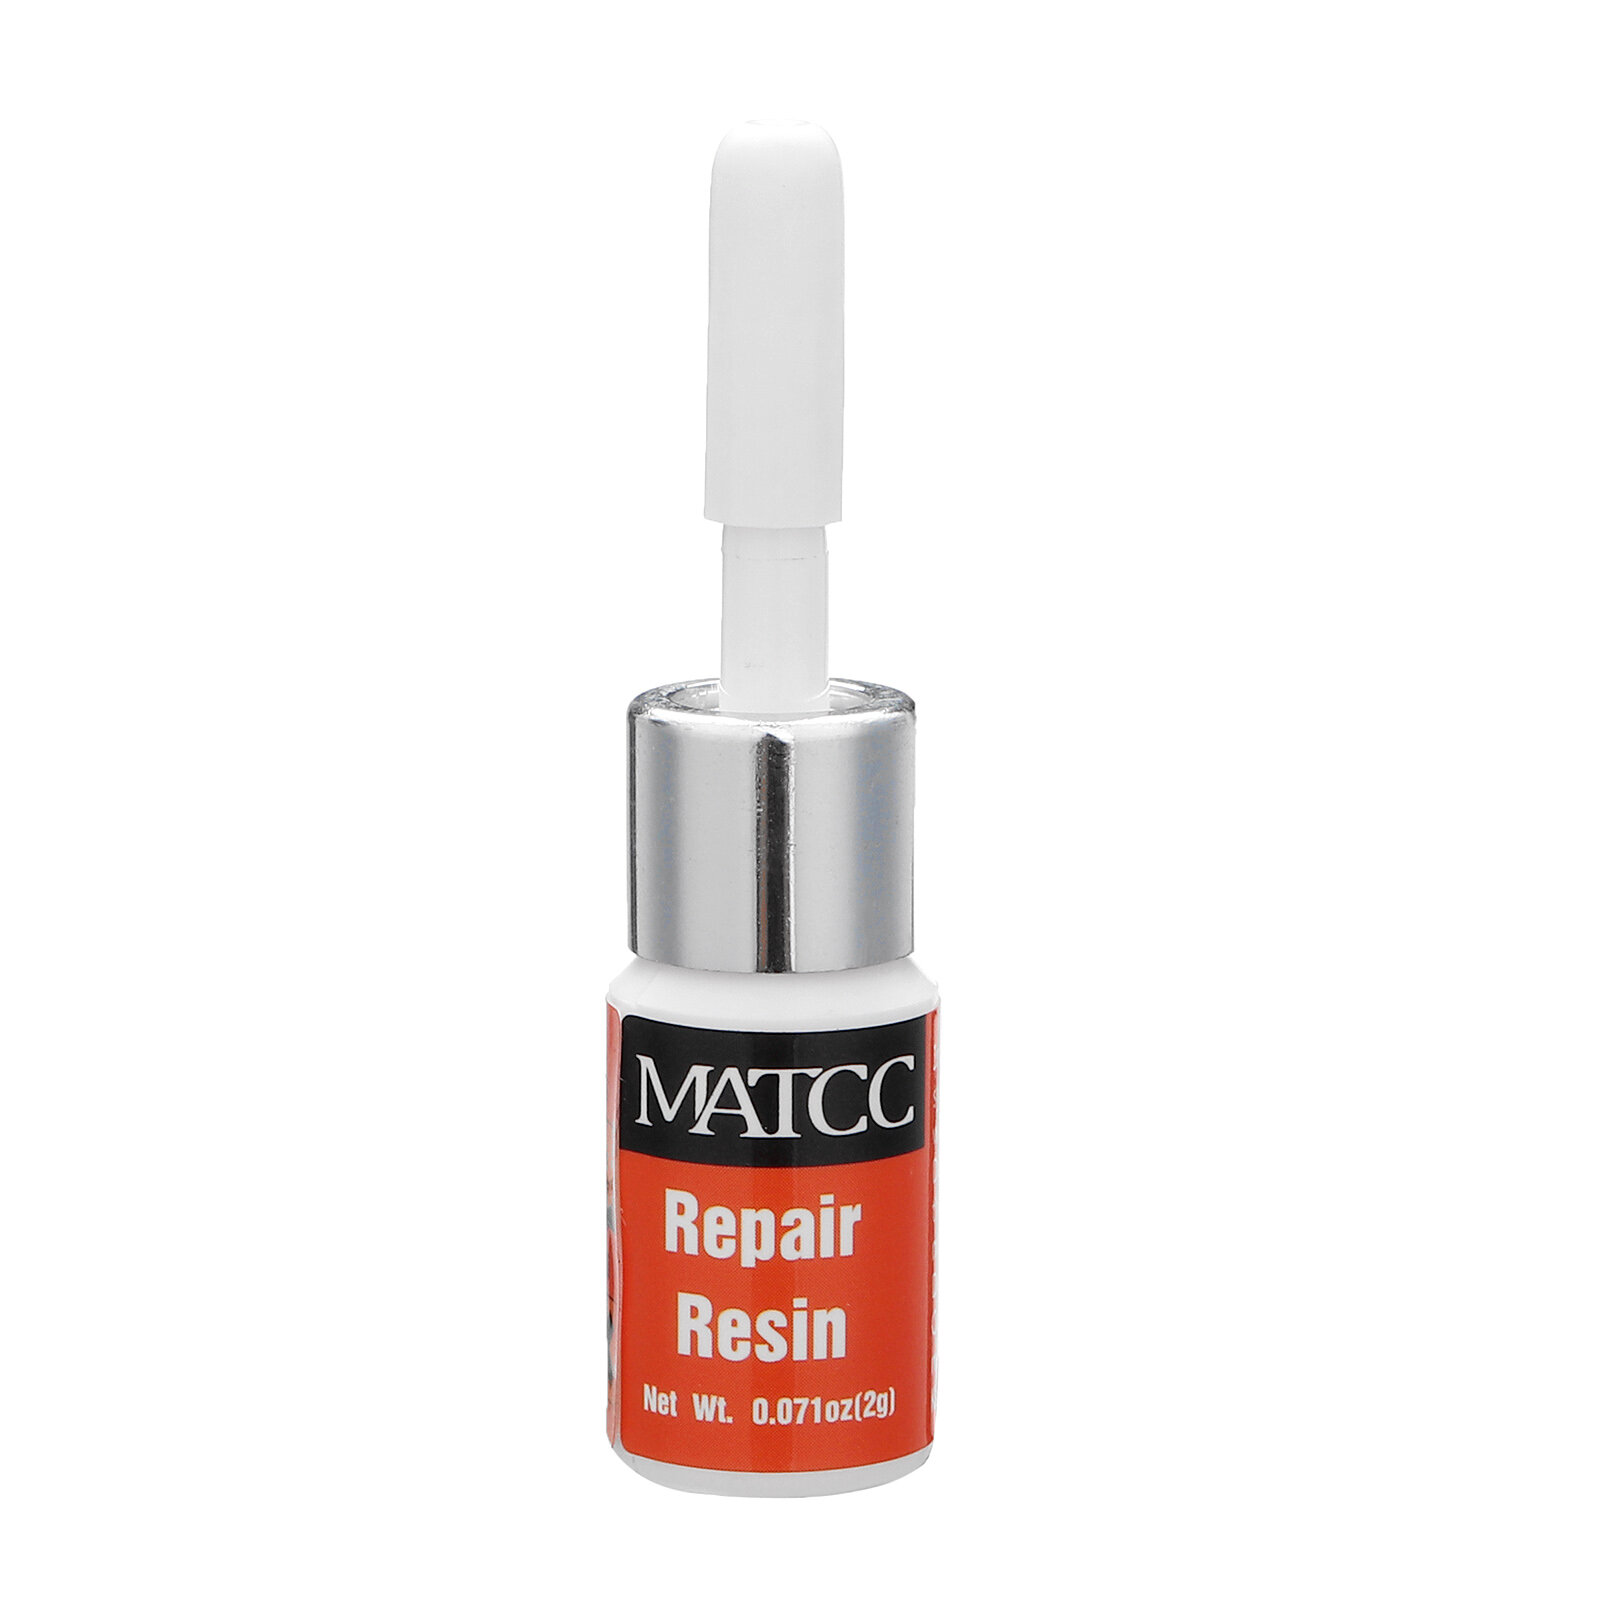 MATCC Glass Repair Kit MWR002 in Orange